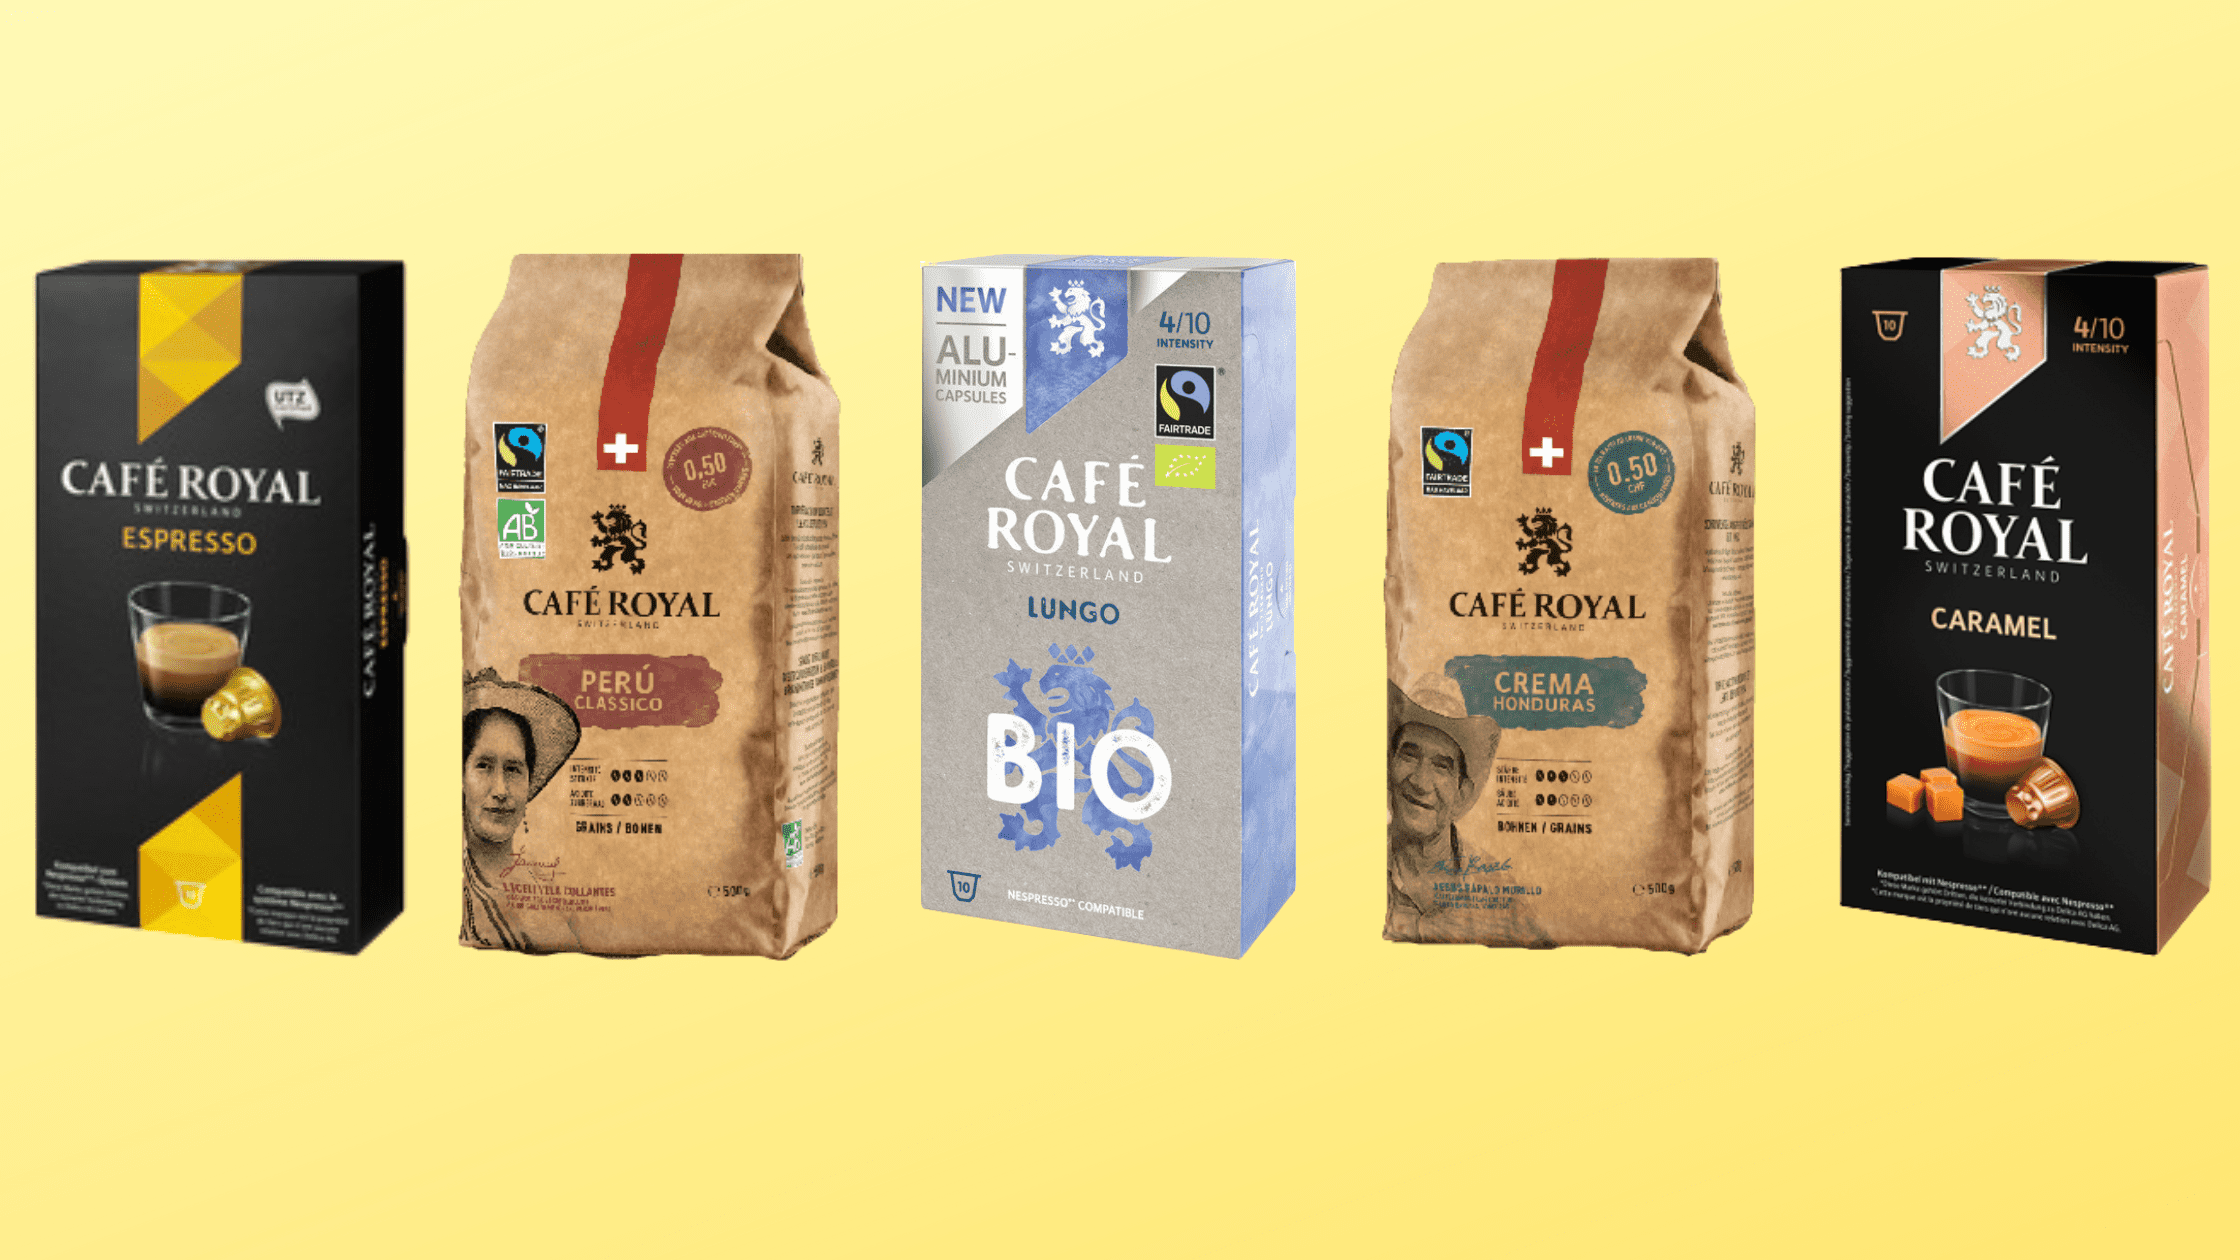 CAFE ROYAL Capsules de café lungo compatibles Nespresso 18 capsules 95g pas  cher 